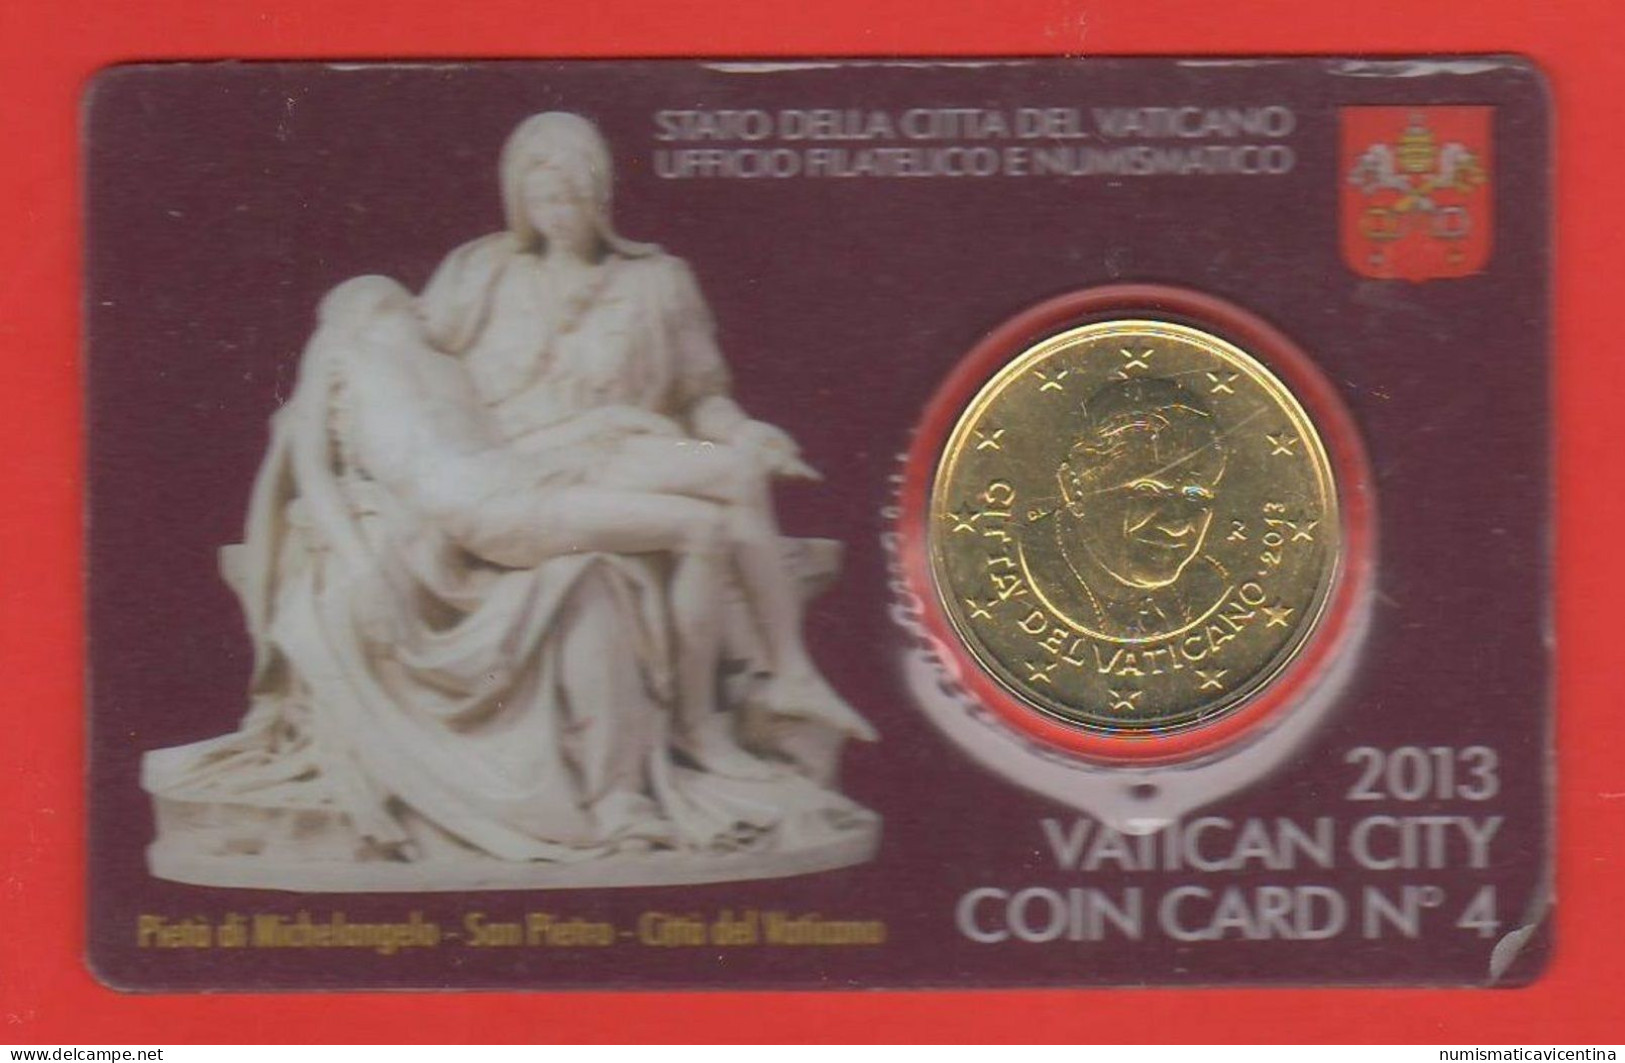 Vaticano 50 Centesimi 2013 Benedetto XVI° Coin Card N ° 4 Mint Roma 0,50 € Vatican City - Vatican